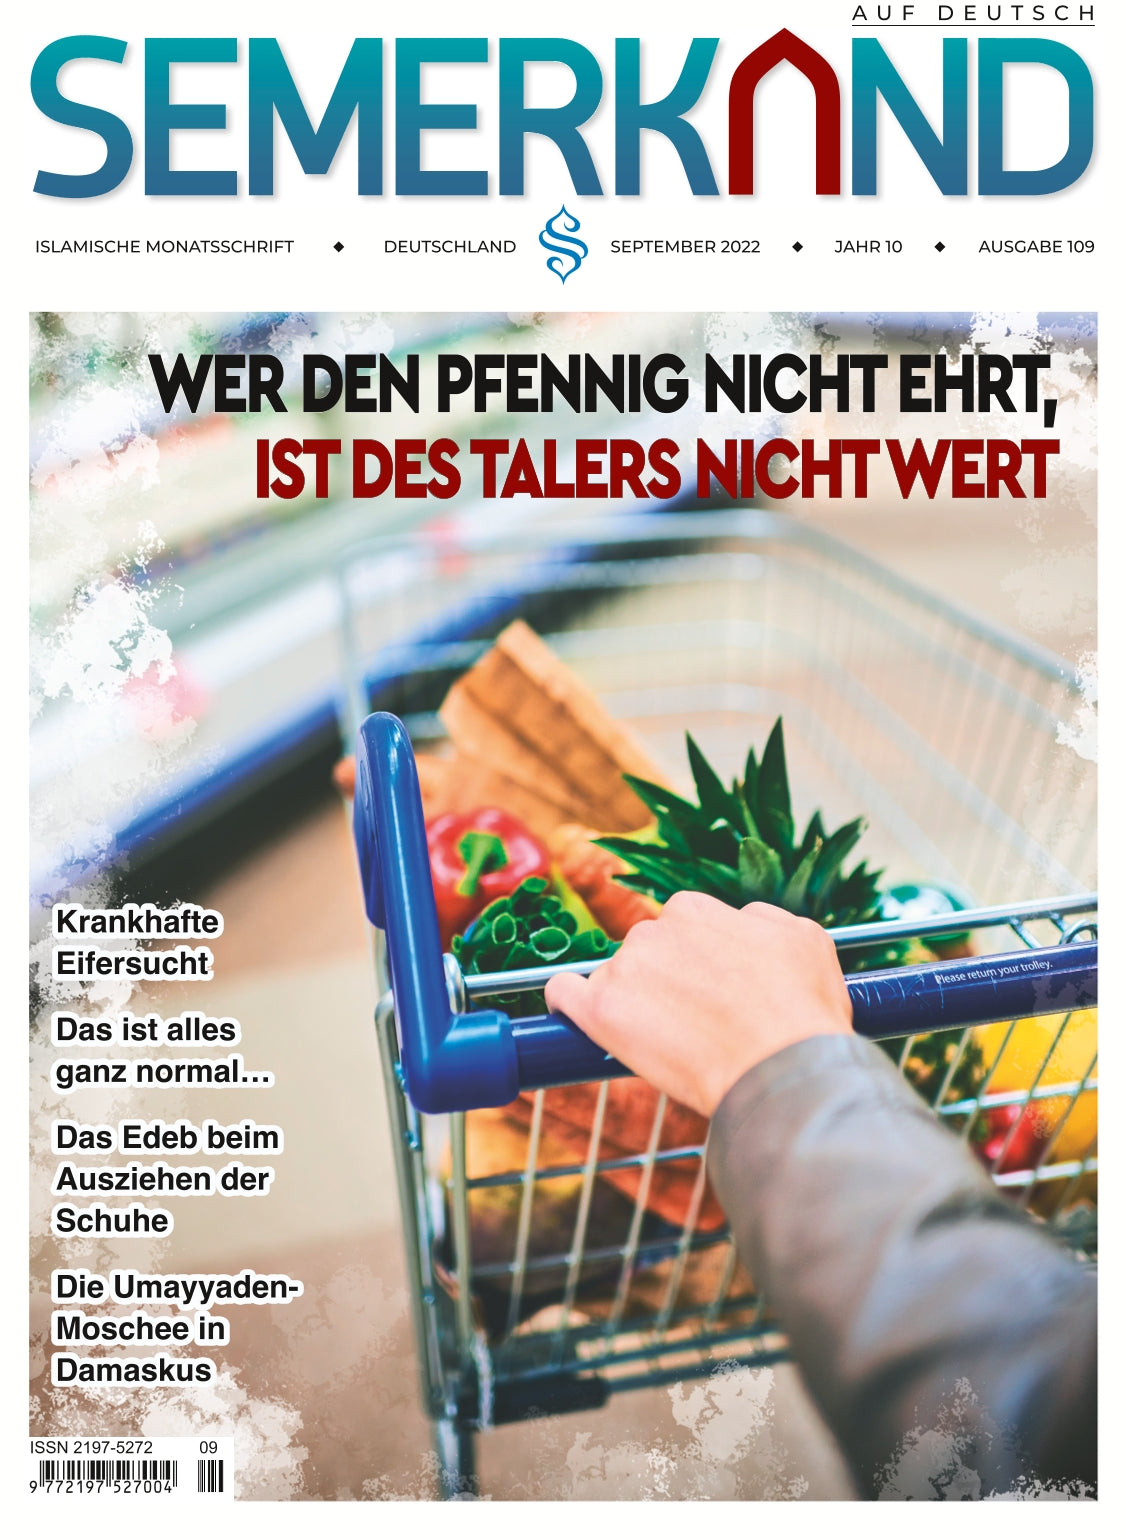 Semerkand Zeitschrift - September 2022 Ausgabe (Digital)